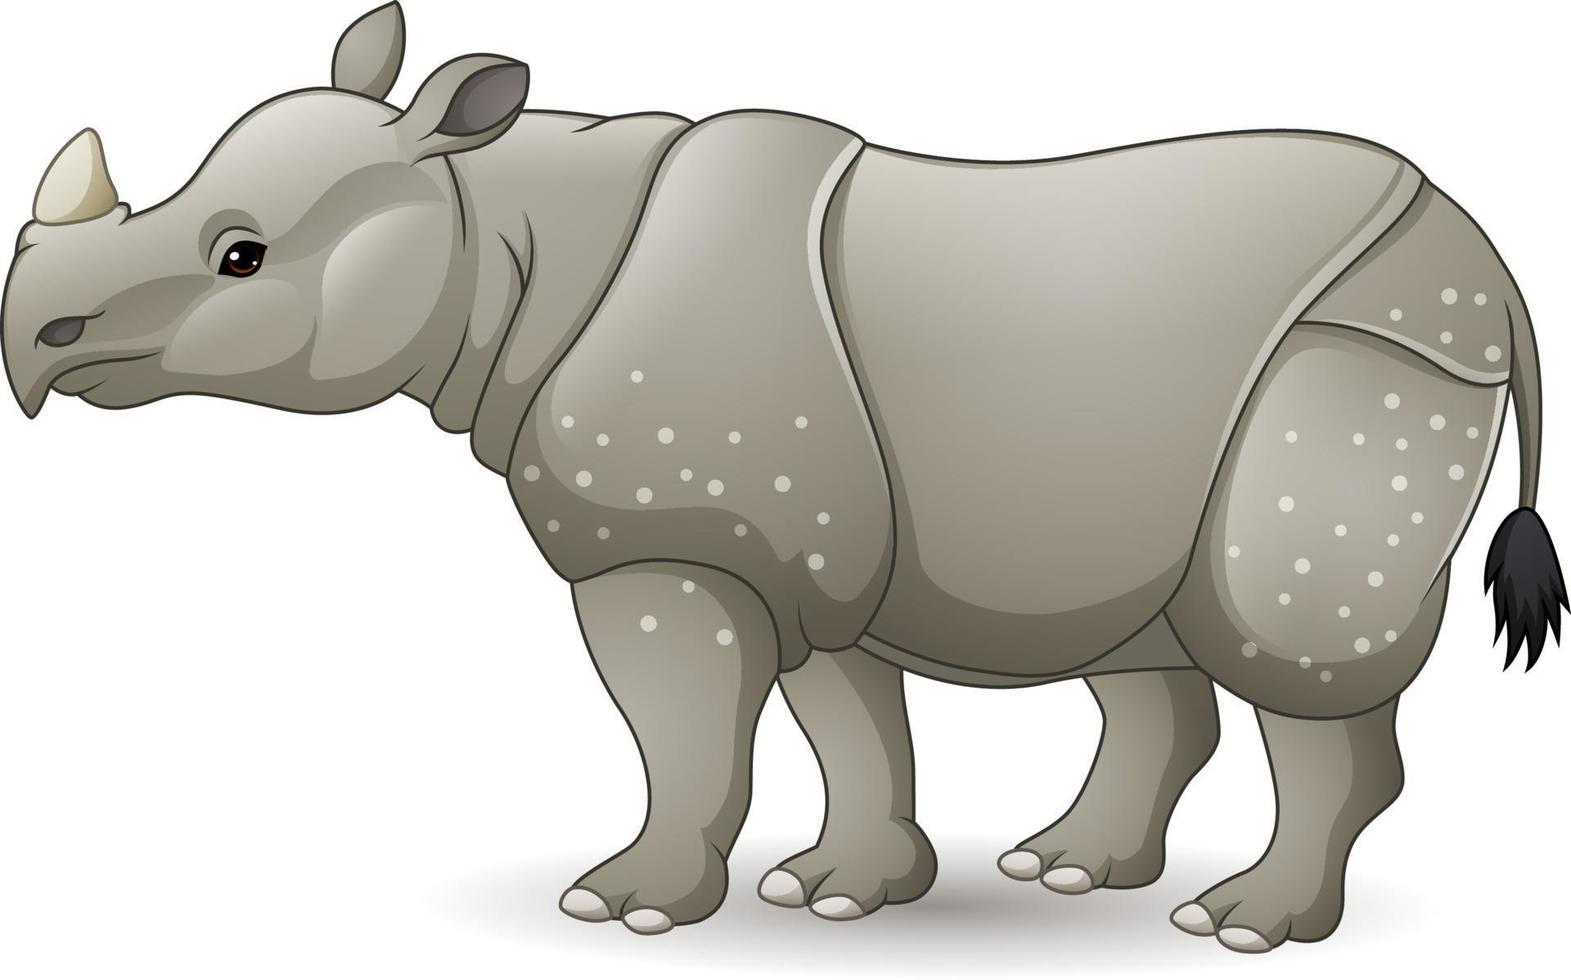 dessin animé rhinocéros asiatique isolé sur fond blanc vecteur